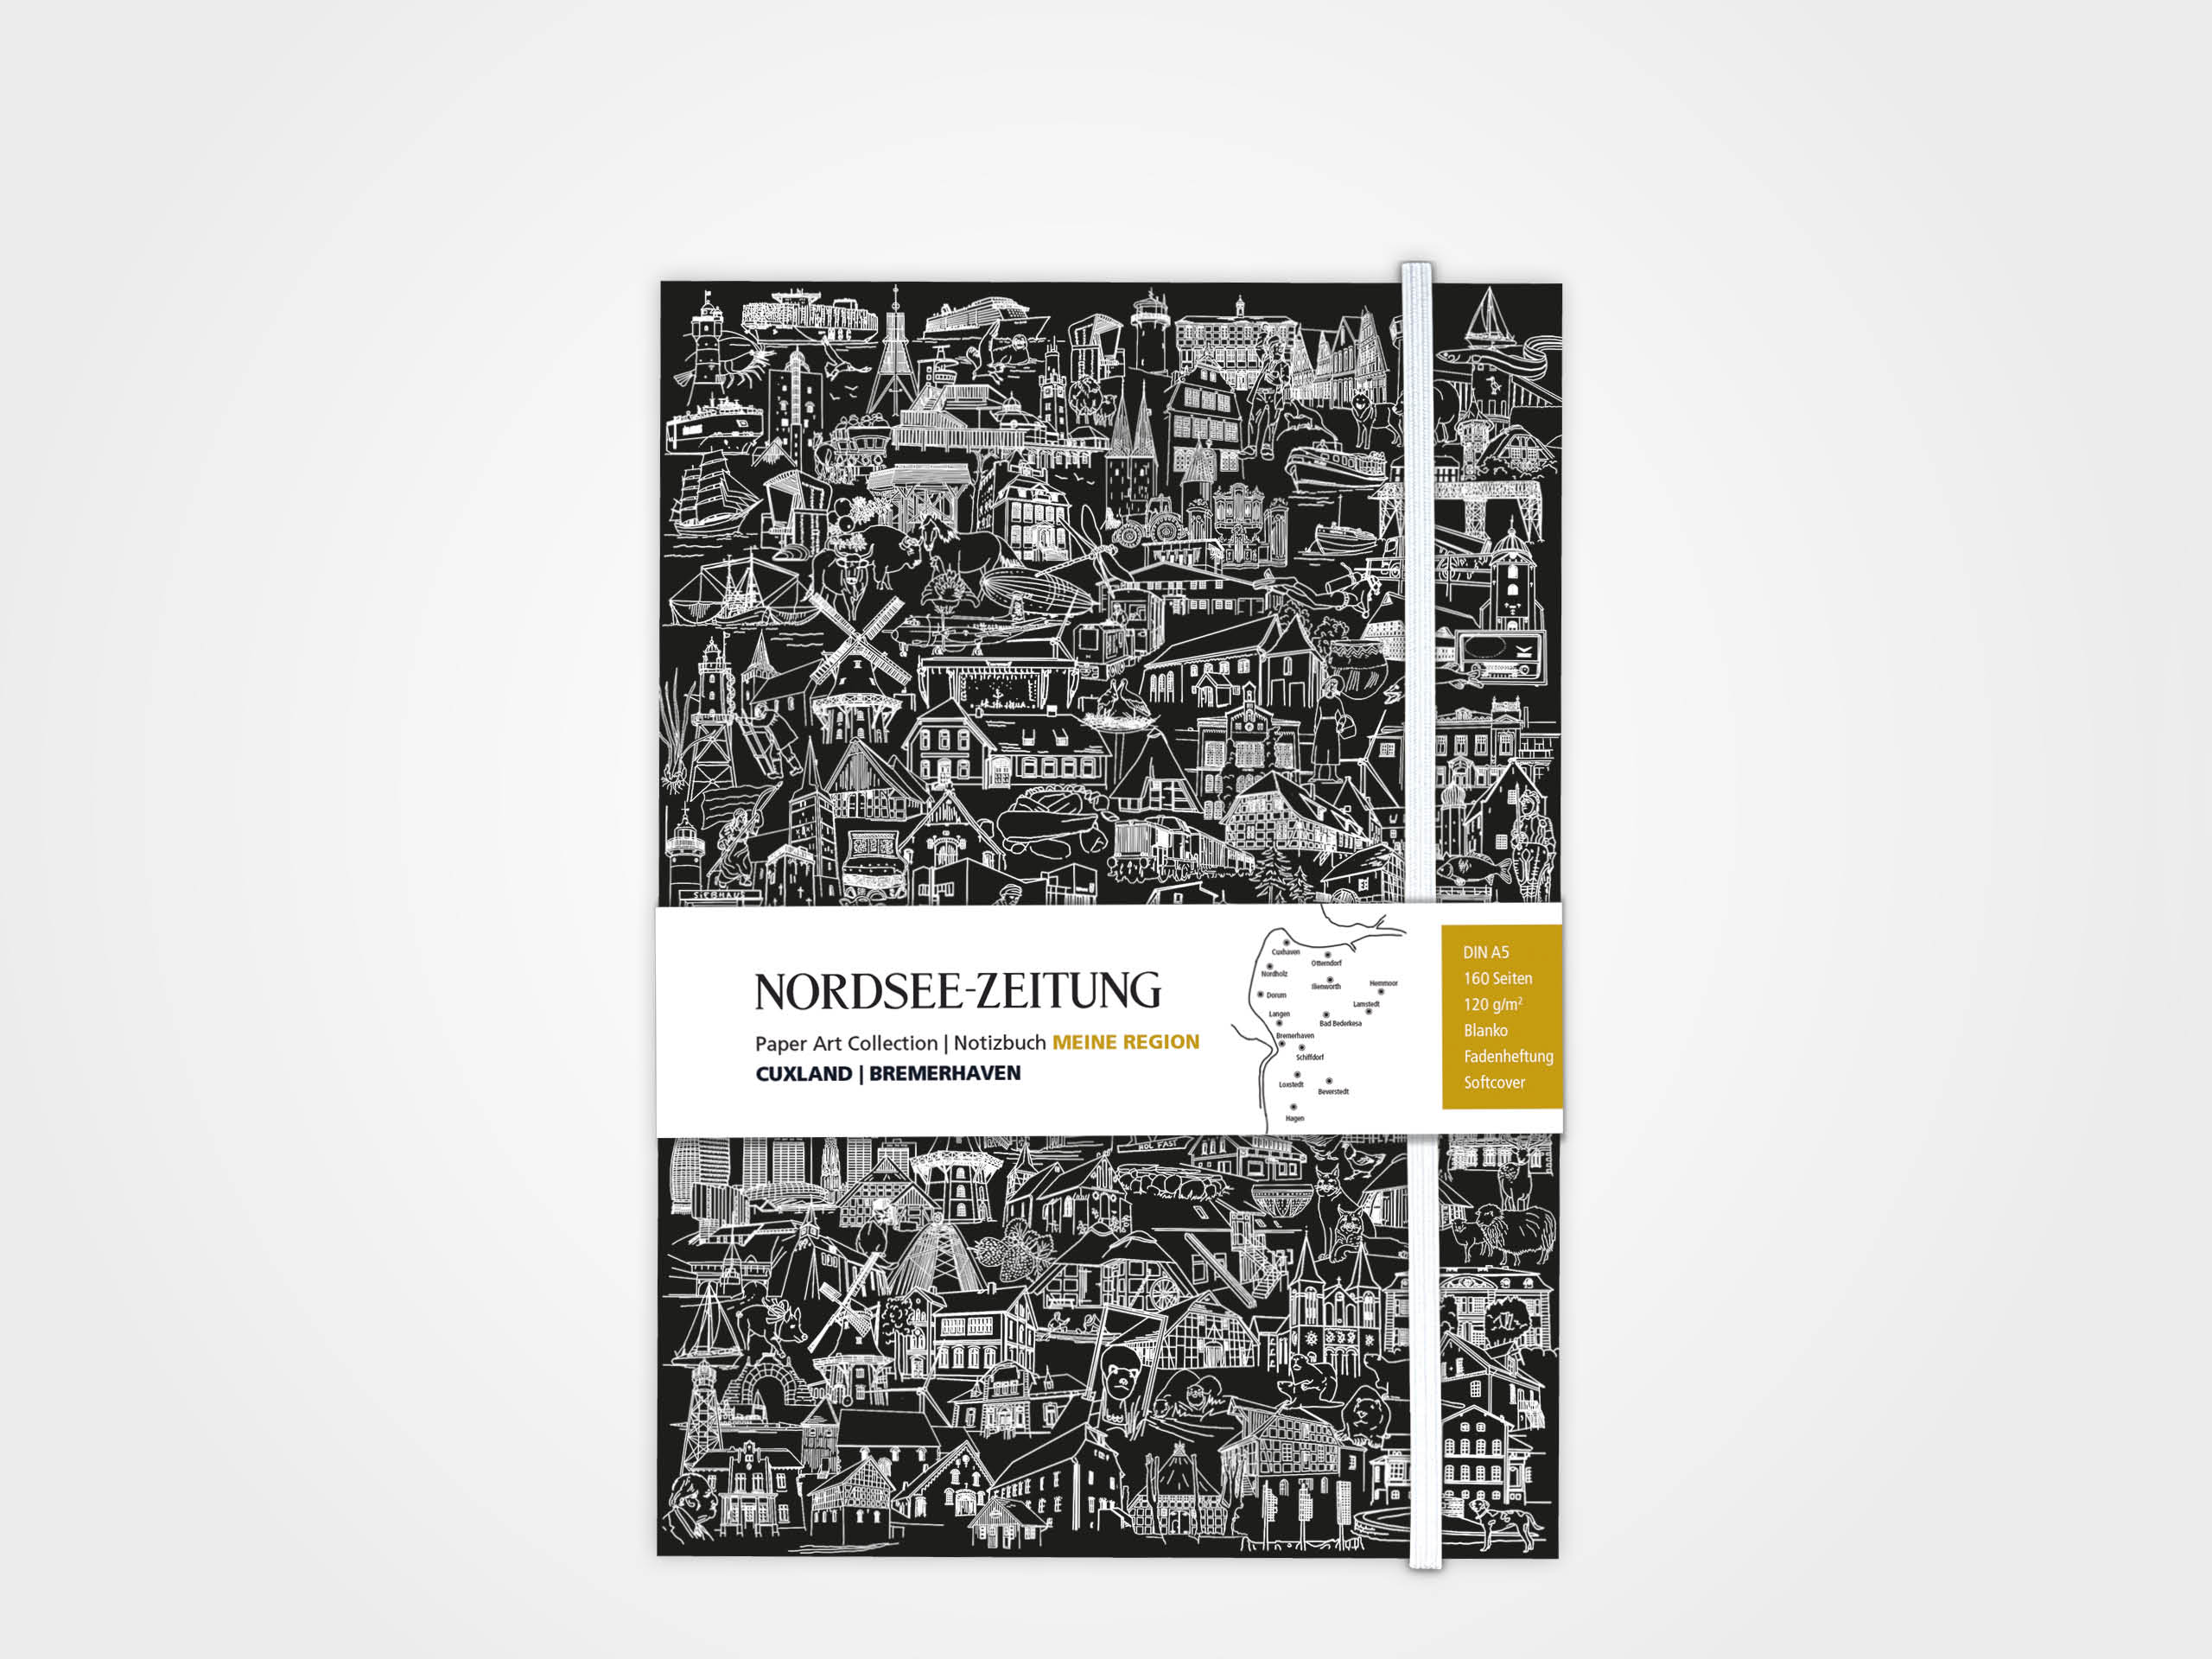 Notizbuch MEINE REGION - CUXLAND | BREMERHAVEN